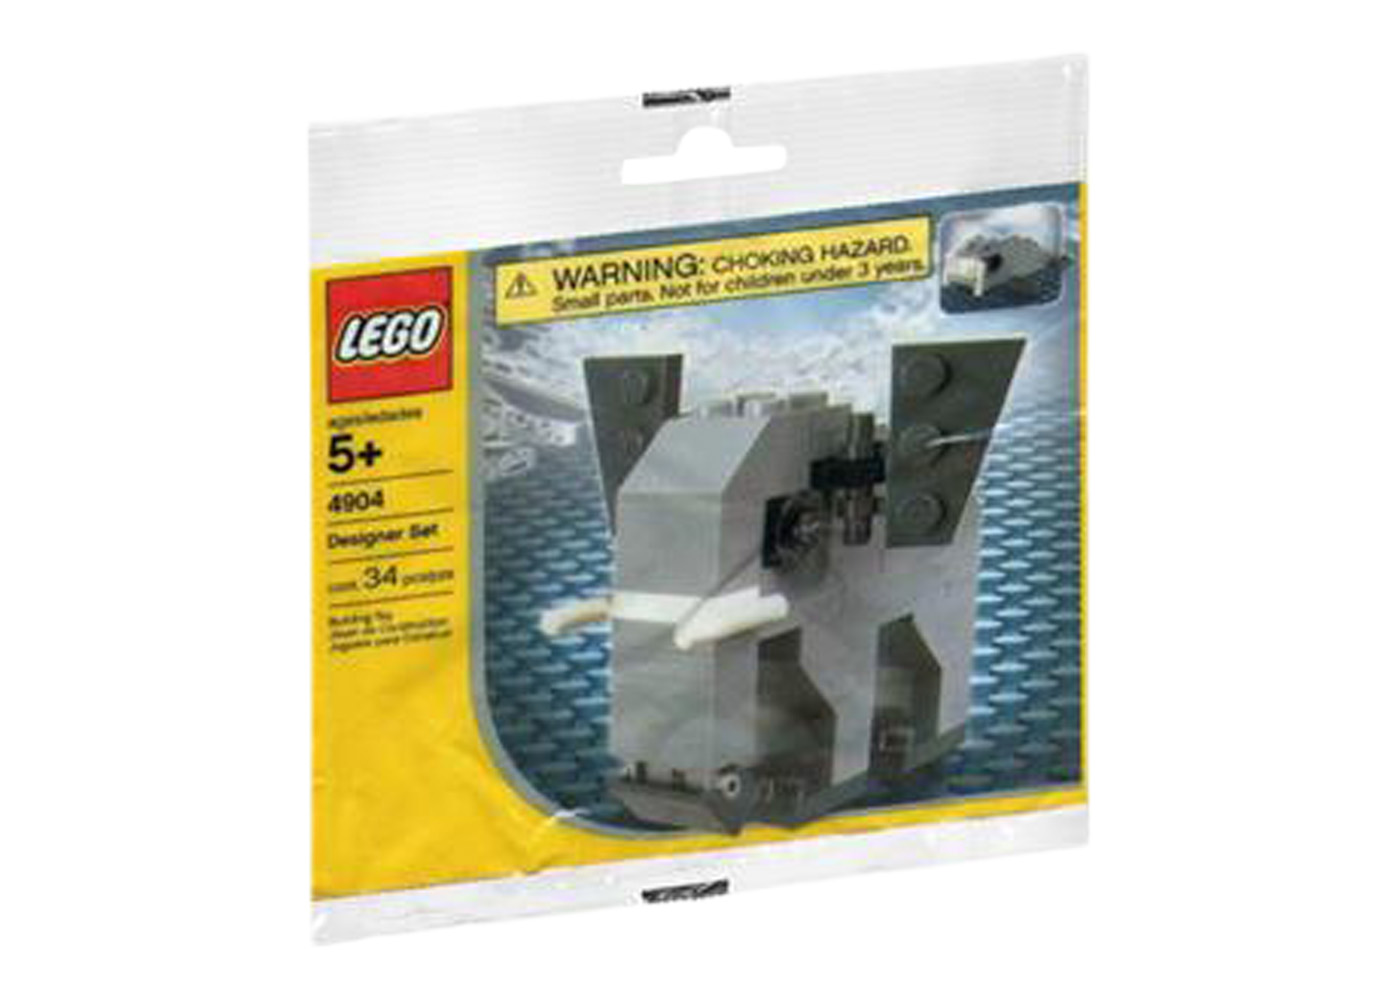 LEGO Elephant Set 4904